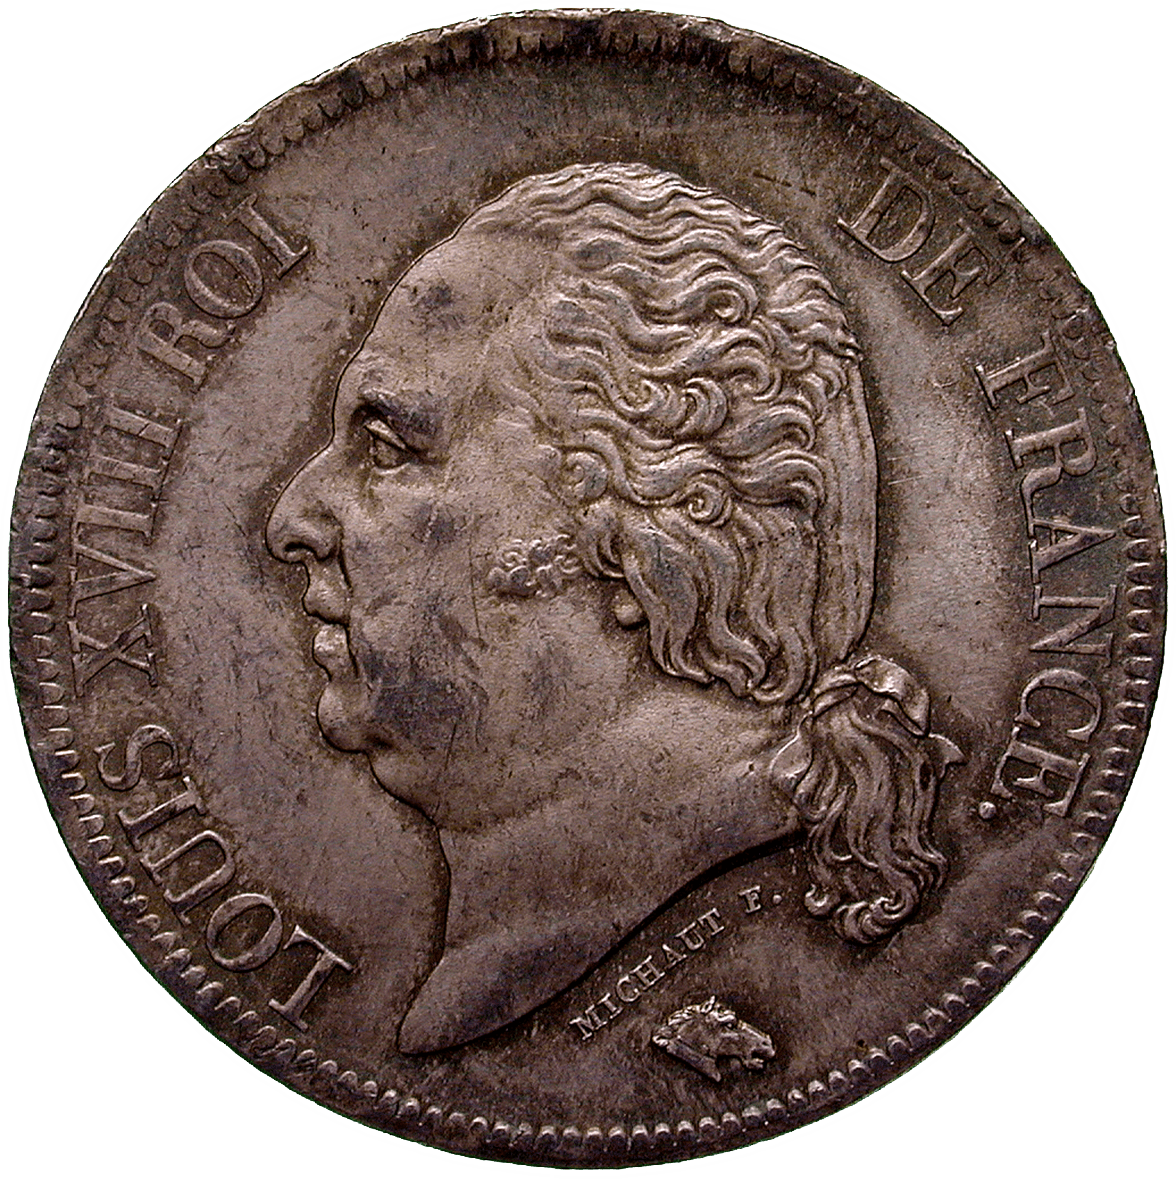 Königreich Frankreich, Ludwig XVIII., 5 Francs 1817 (obverse)